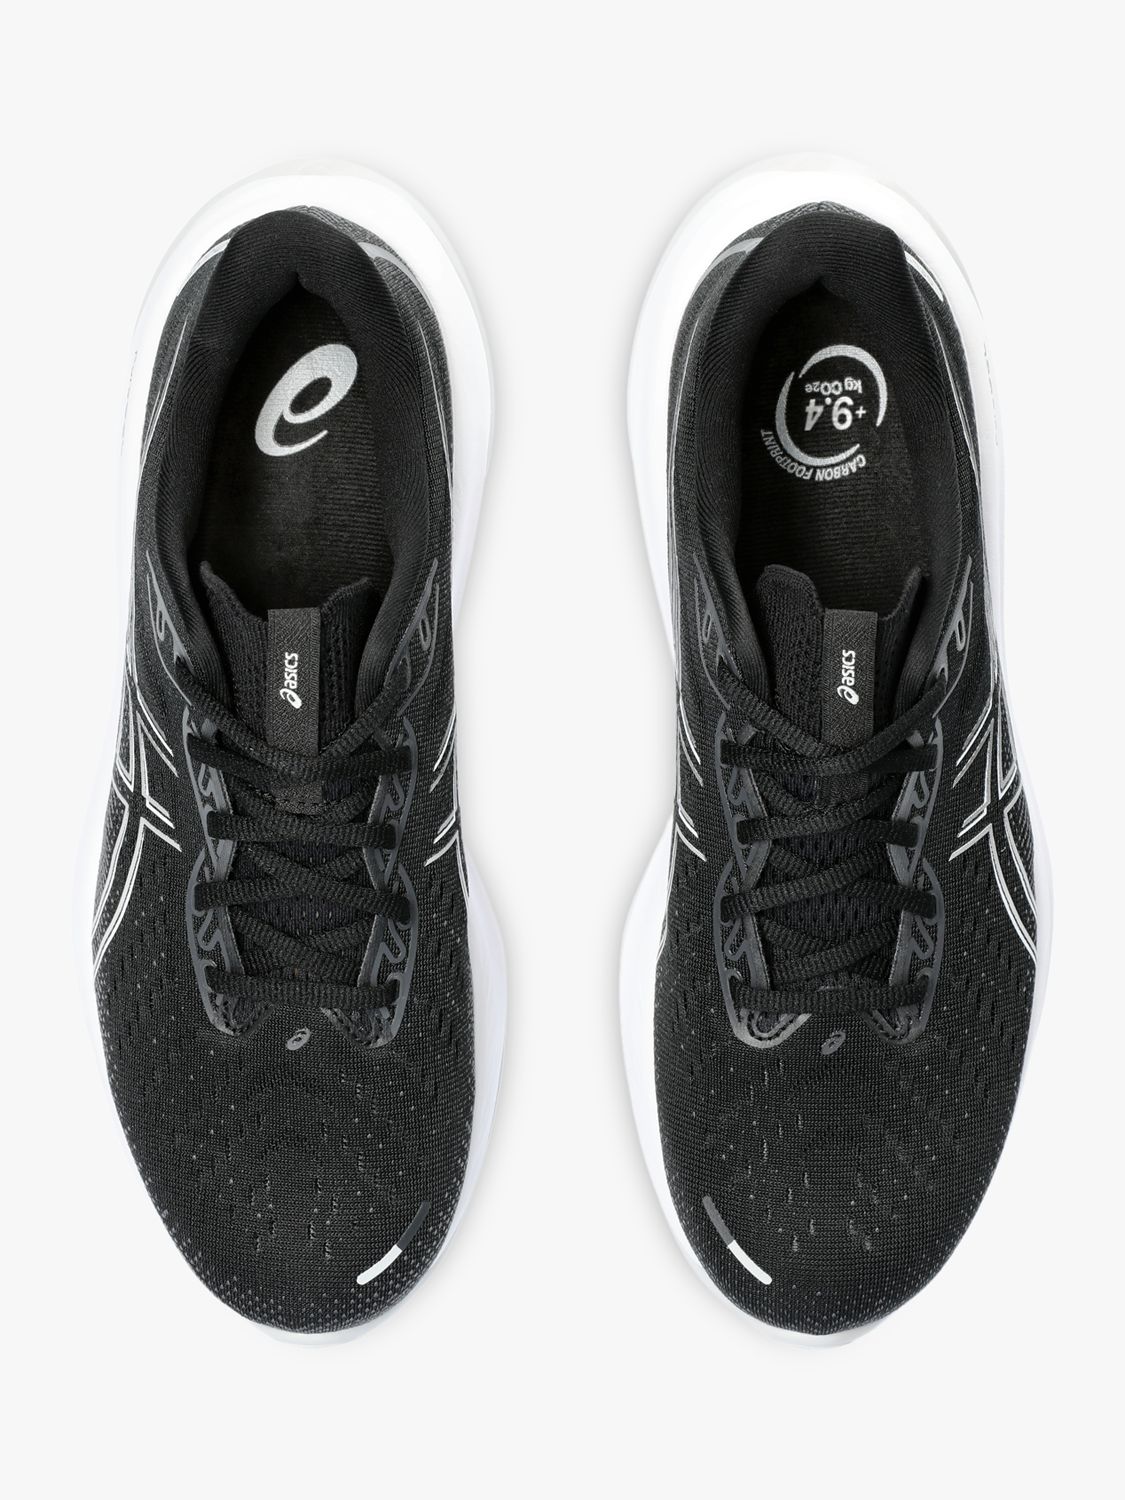 ASICS GEL-CUMULUS 26 Men's Running Shoes, Black/Concrete, 8